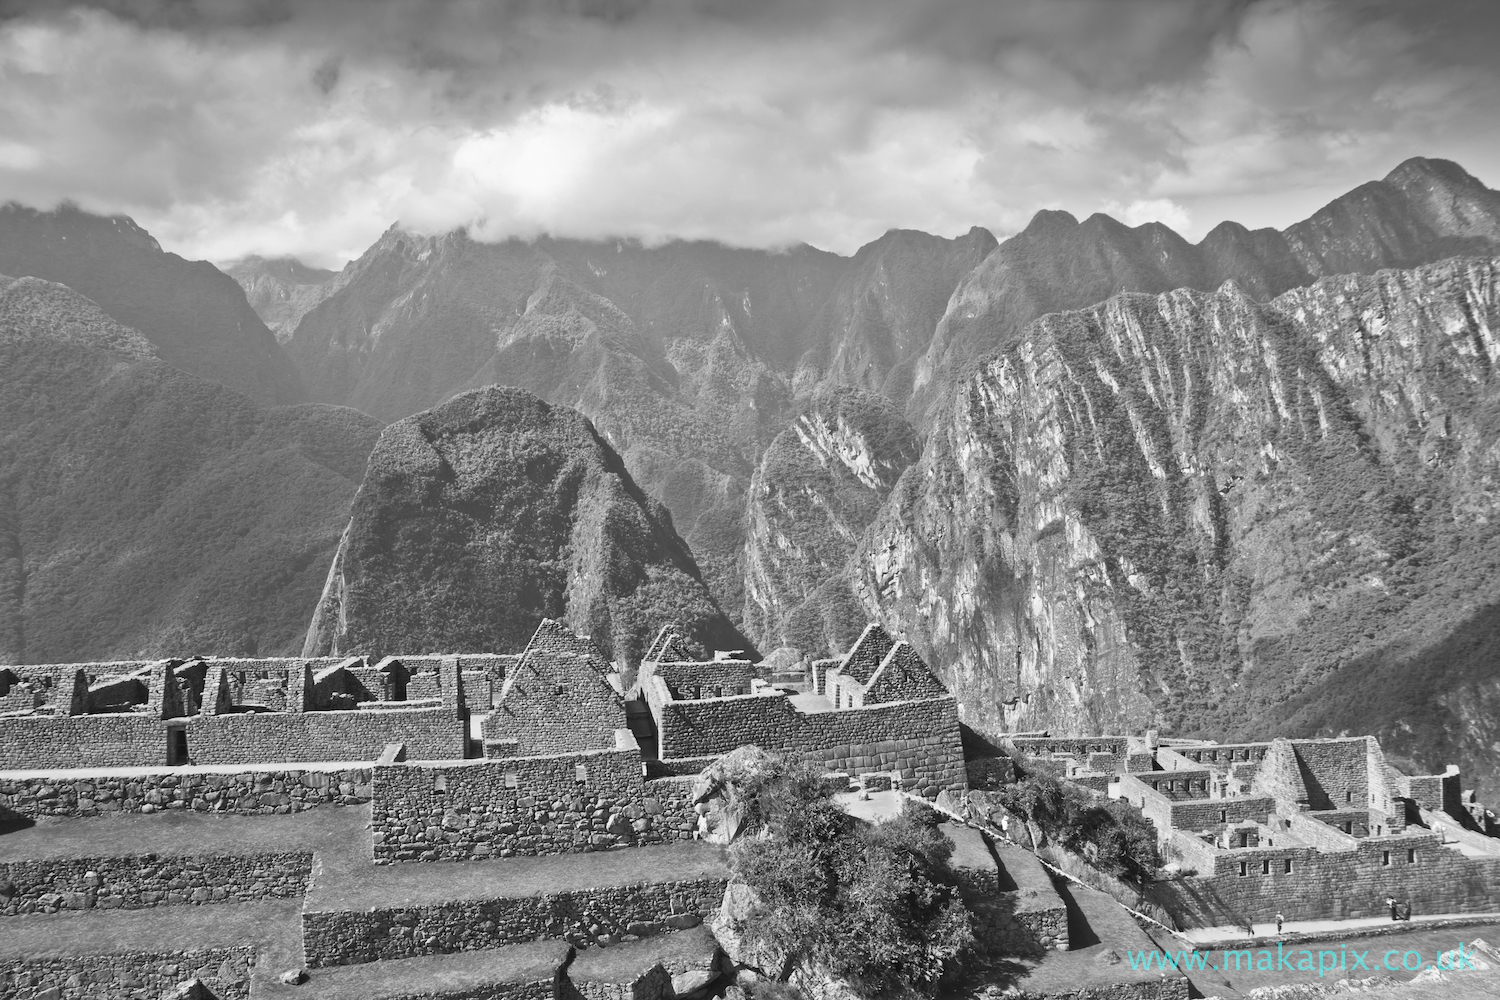 Machu Picchu in black and white